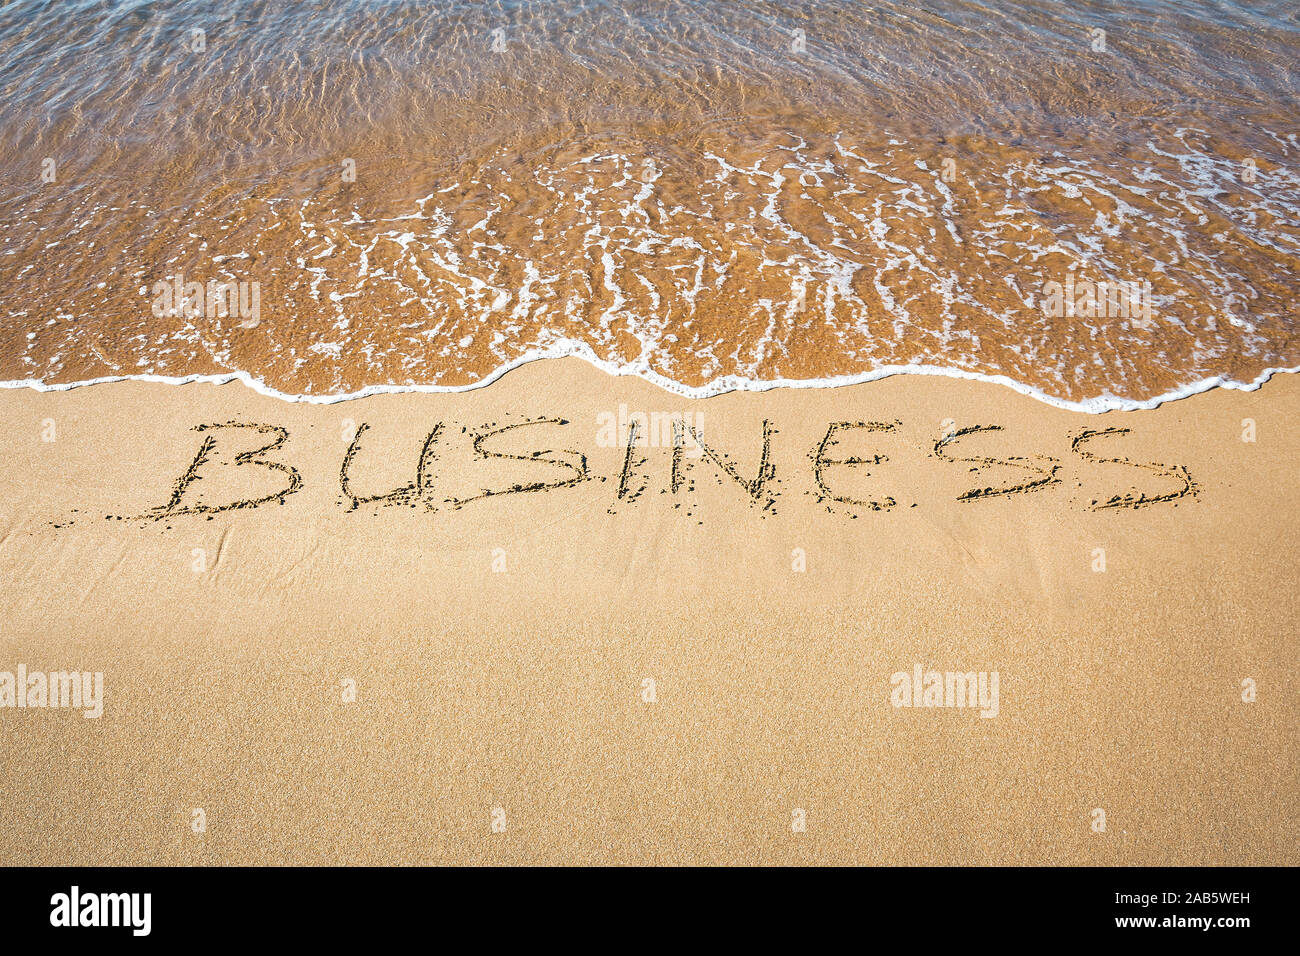 Ein Sandstrand, auf dem 'Business' geschrieben steht. Stock Photo